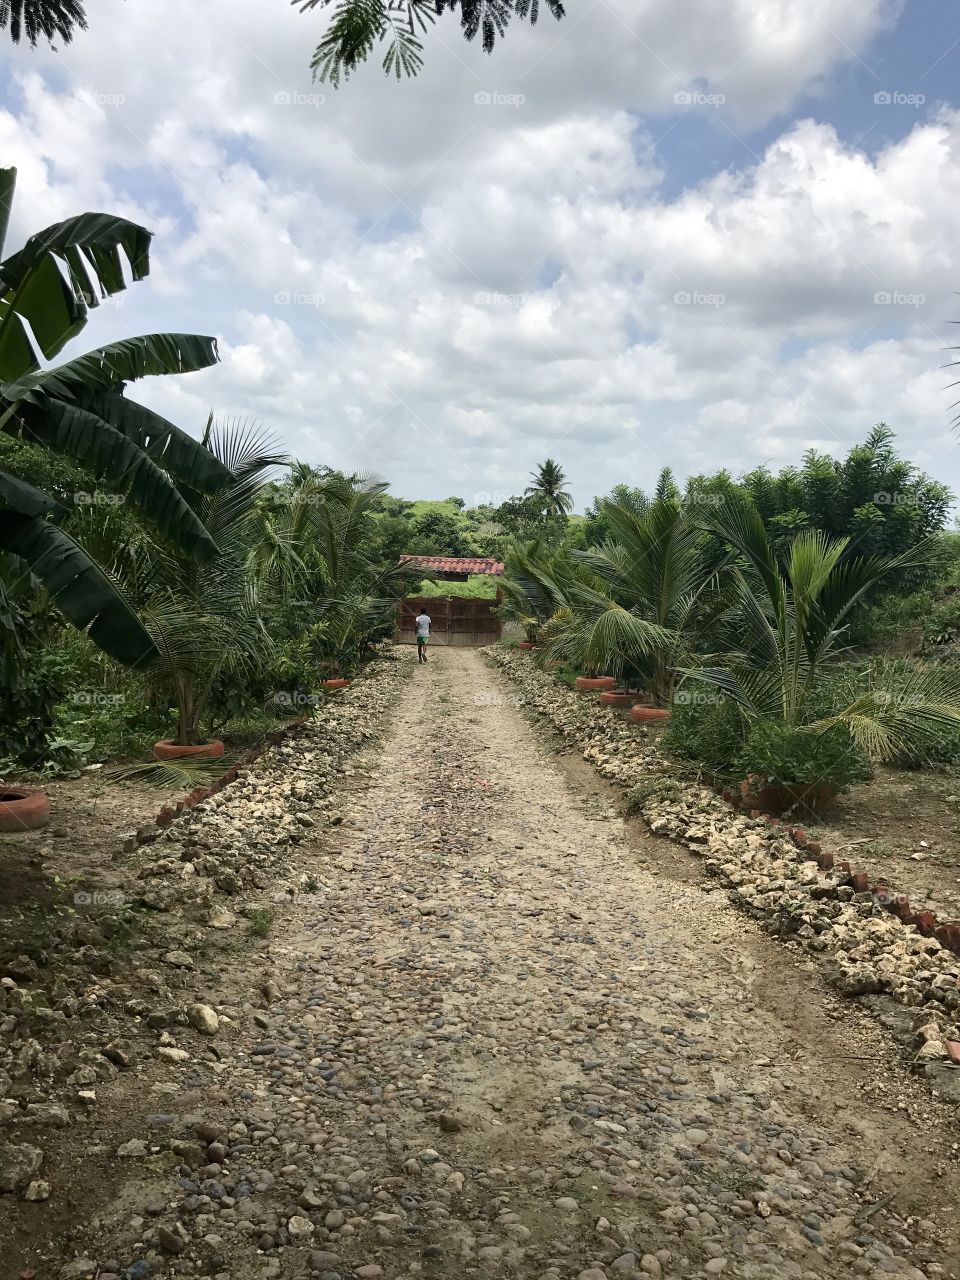 Scenic farm view in Colombia